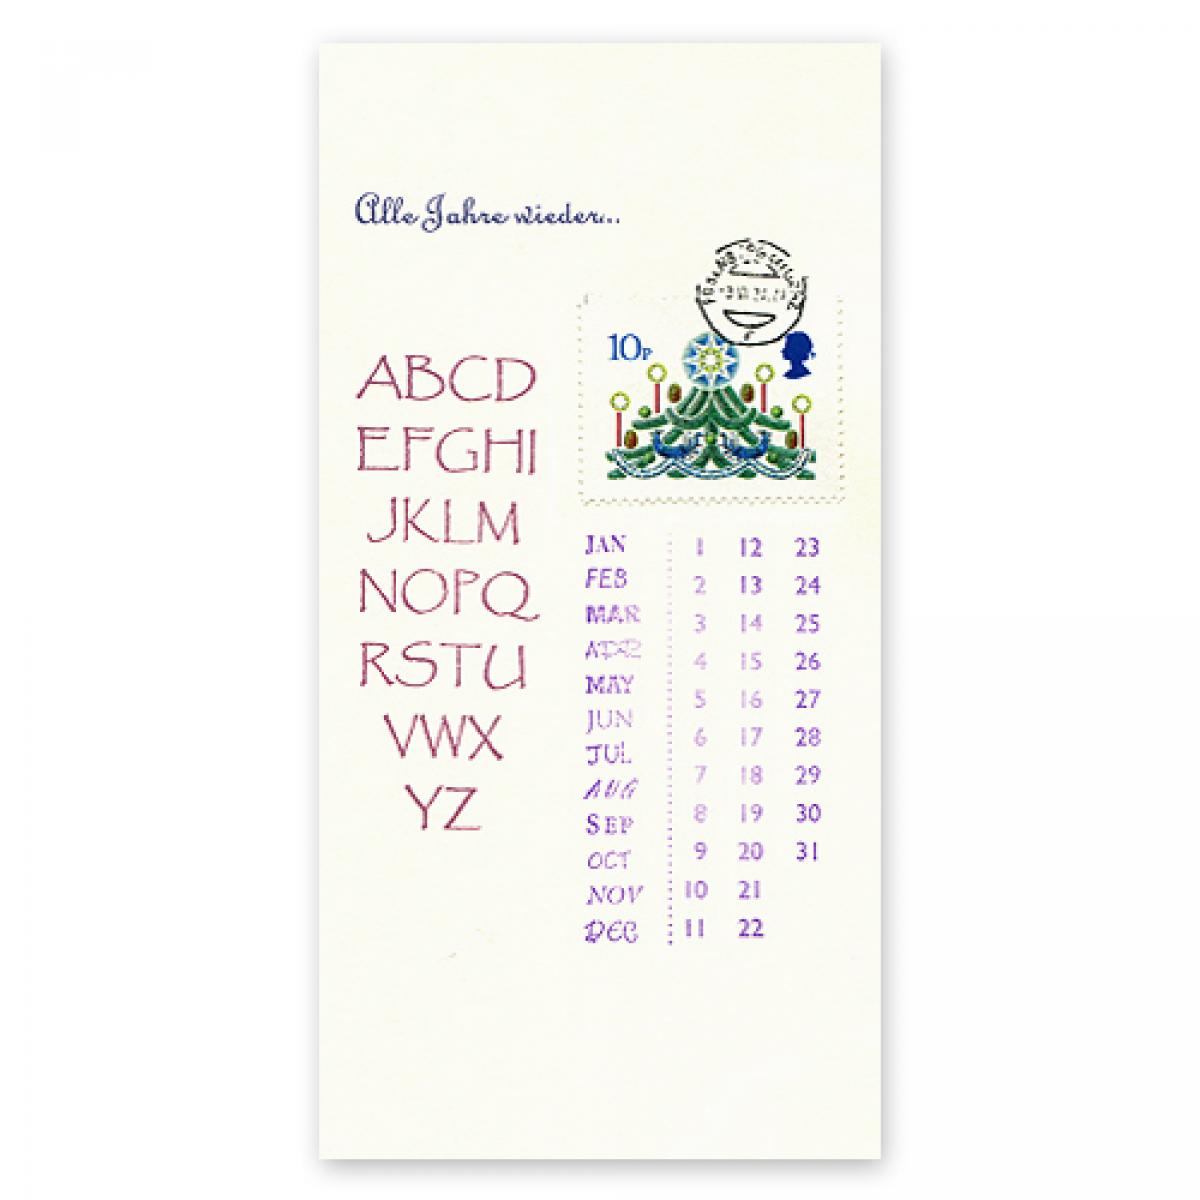 Weihnachtskarte: Alle Jahre wieder ... -  ABC mit Briefmarke